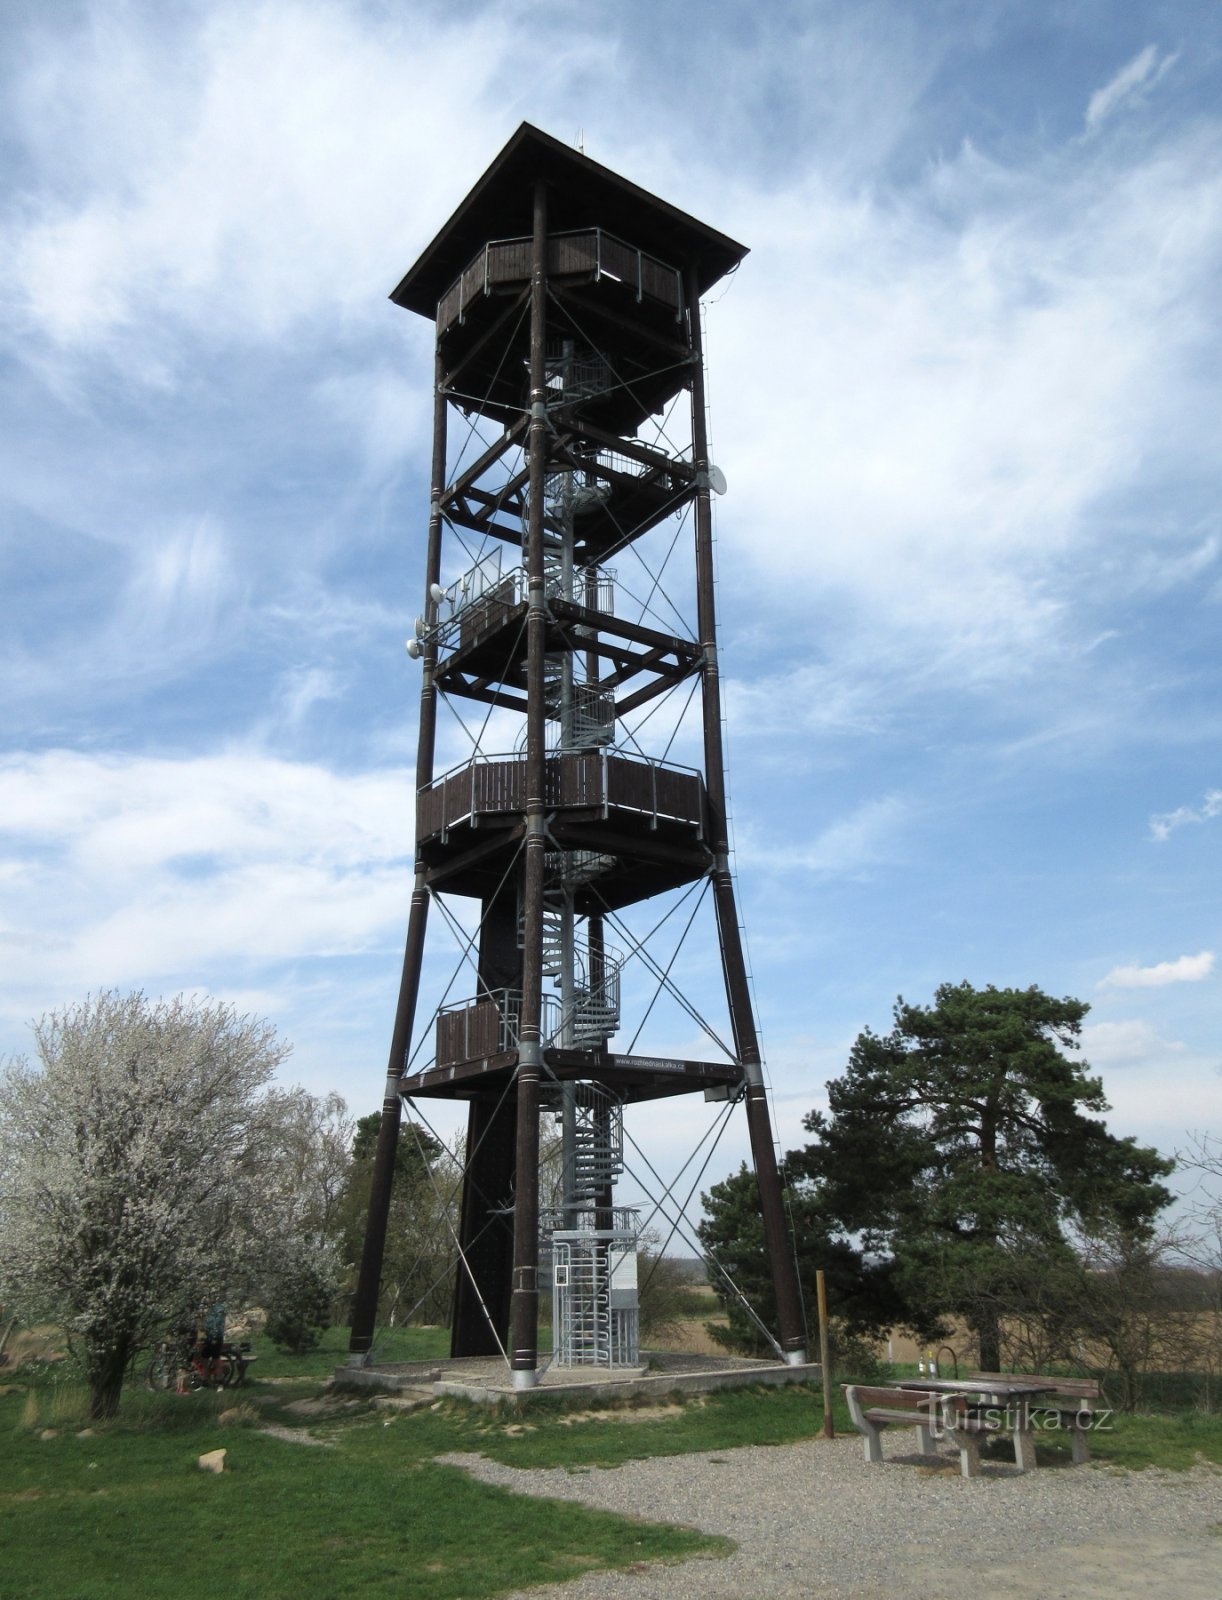 Vyžlovka - torre de vigia Skalka